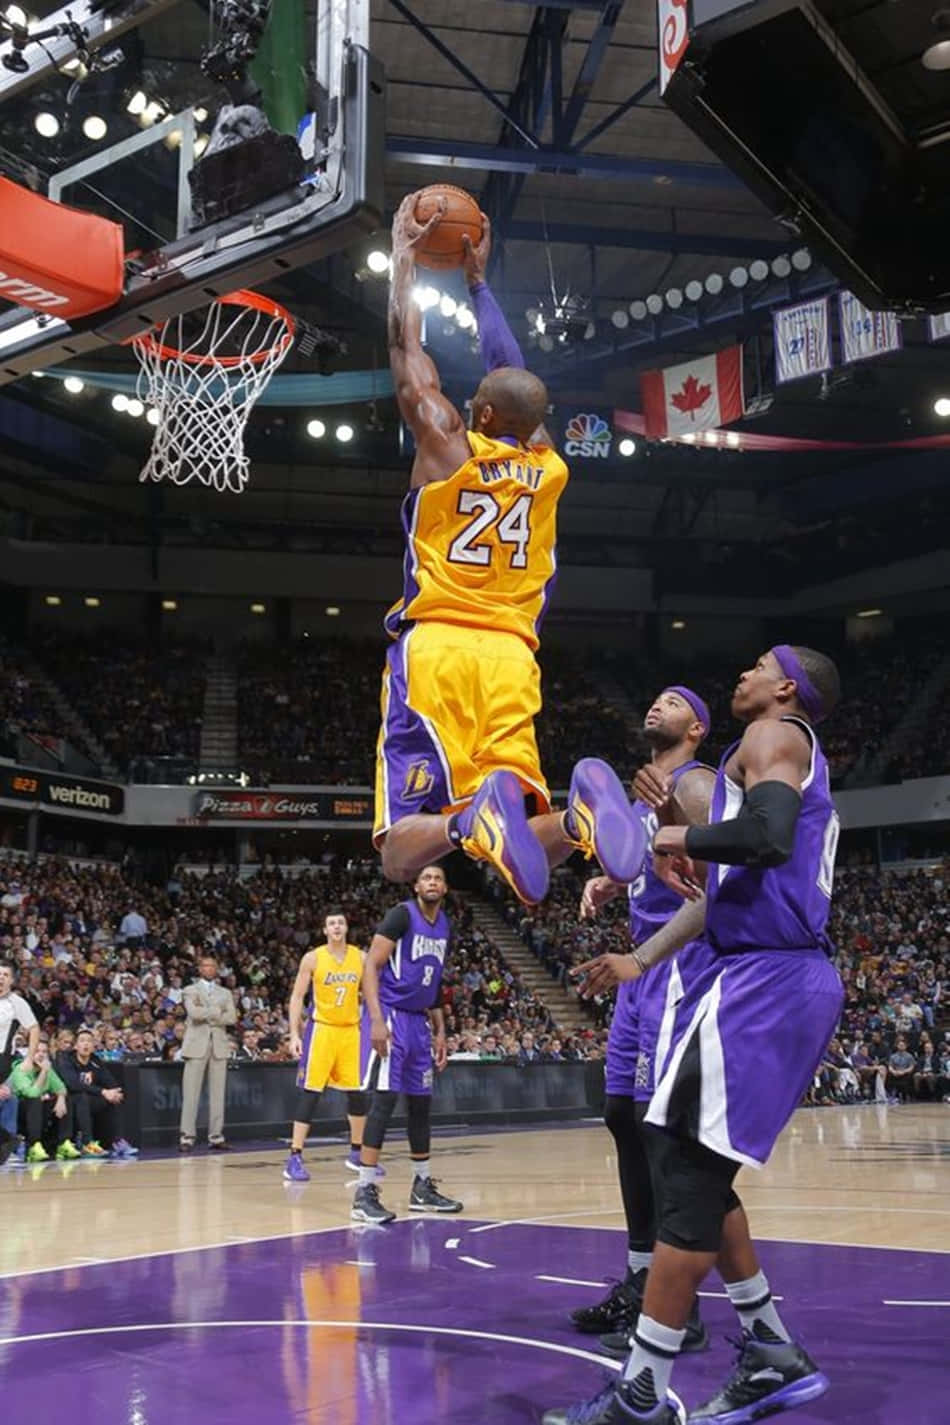 Kobe Bryant dunk over en forsvarsspiller. Wallpaper